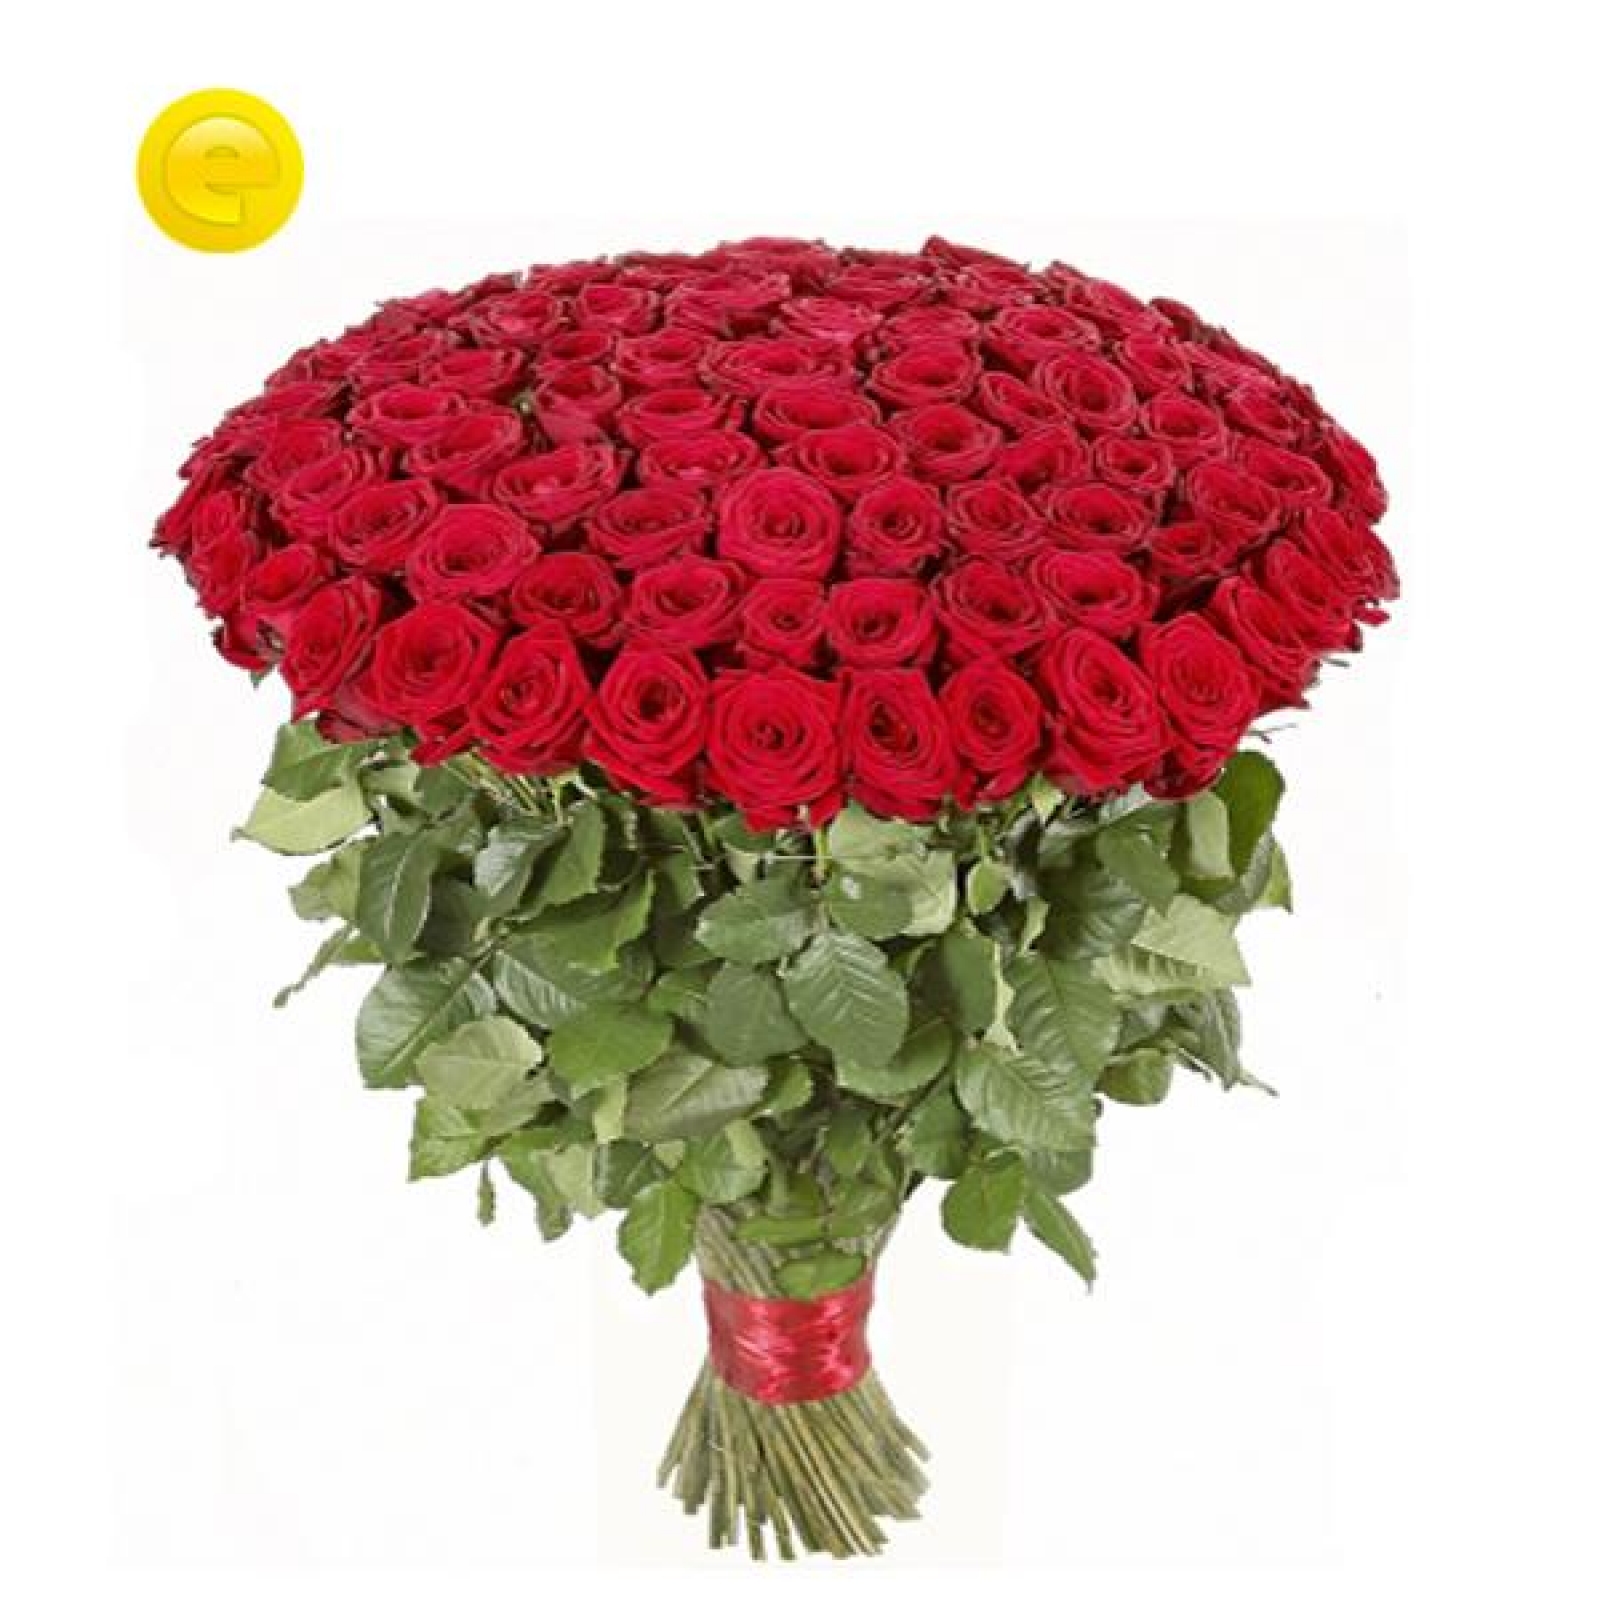 Купить розы в новосибирске недорого